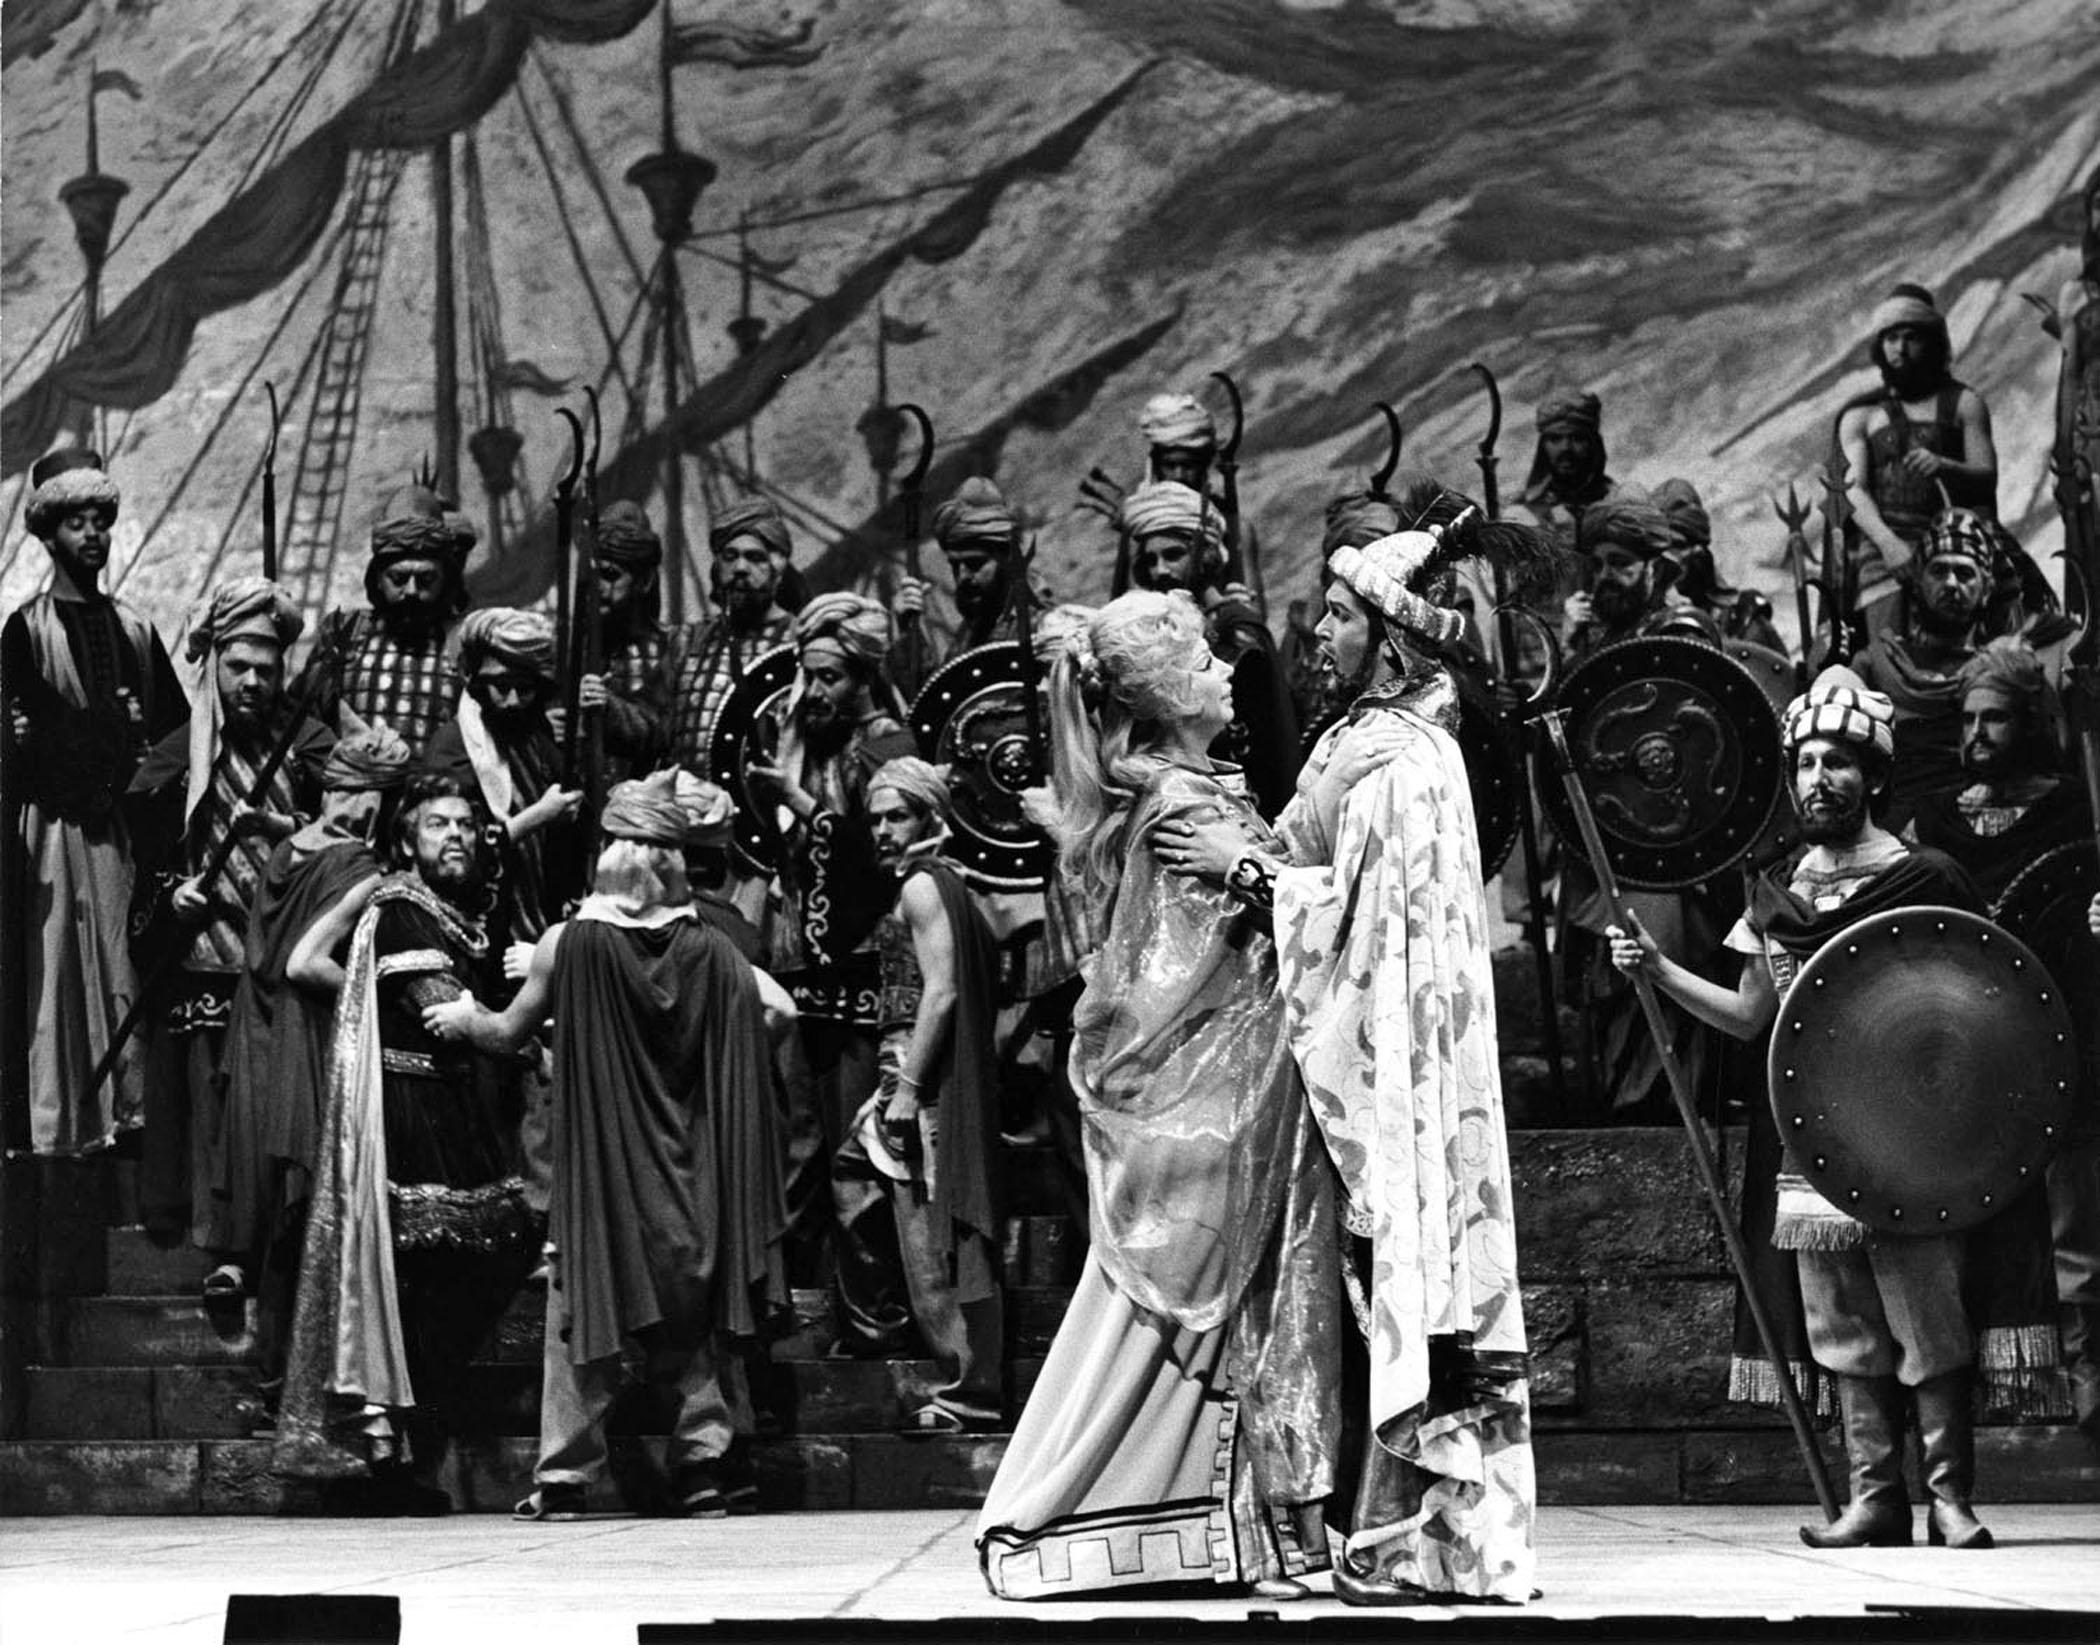 Jack Mitchell Black and White Photograph – In der Metropolitan Opera bildeten sich die Sills auf